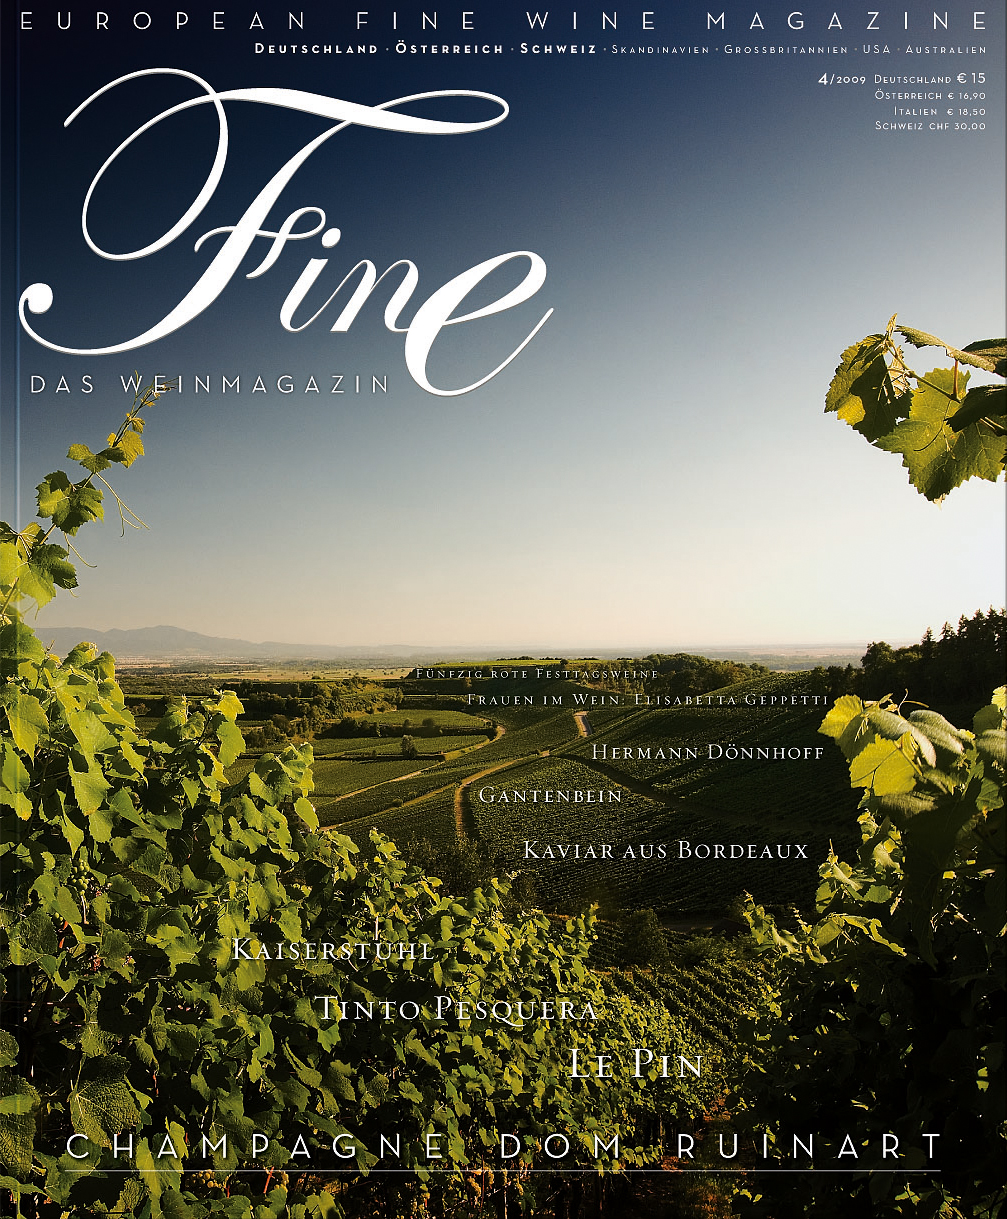 FINE Das Weinmagazin, 7. Ausgabe - 04/2009